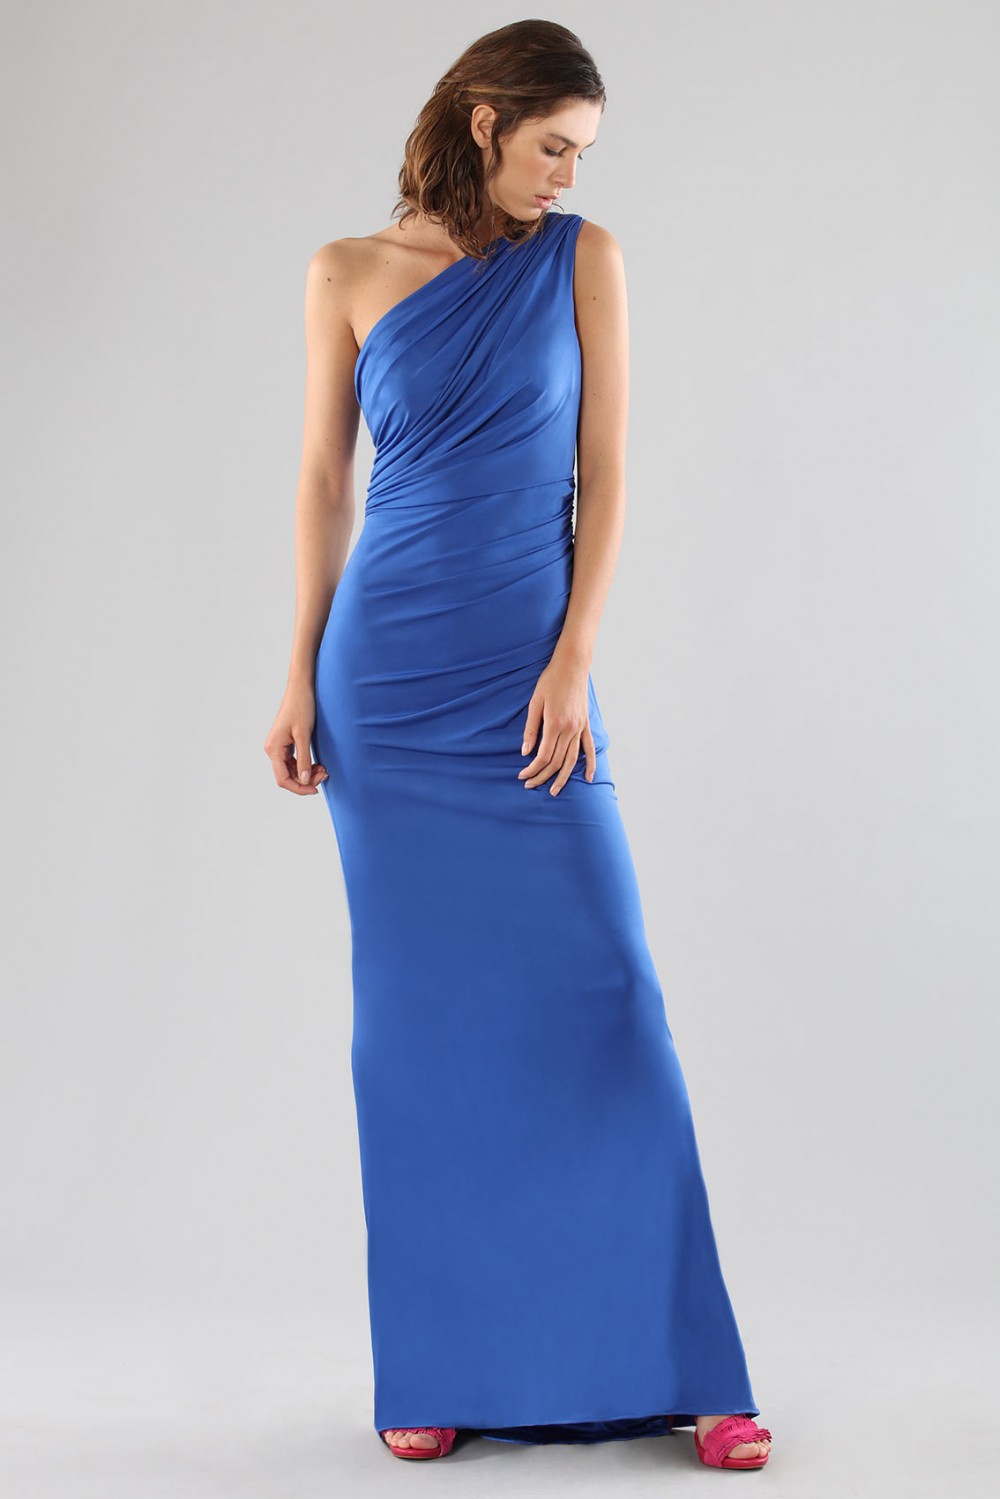 One-shoulder blue dress